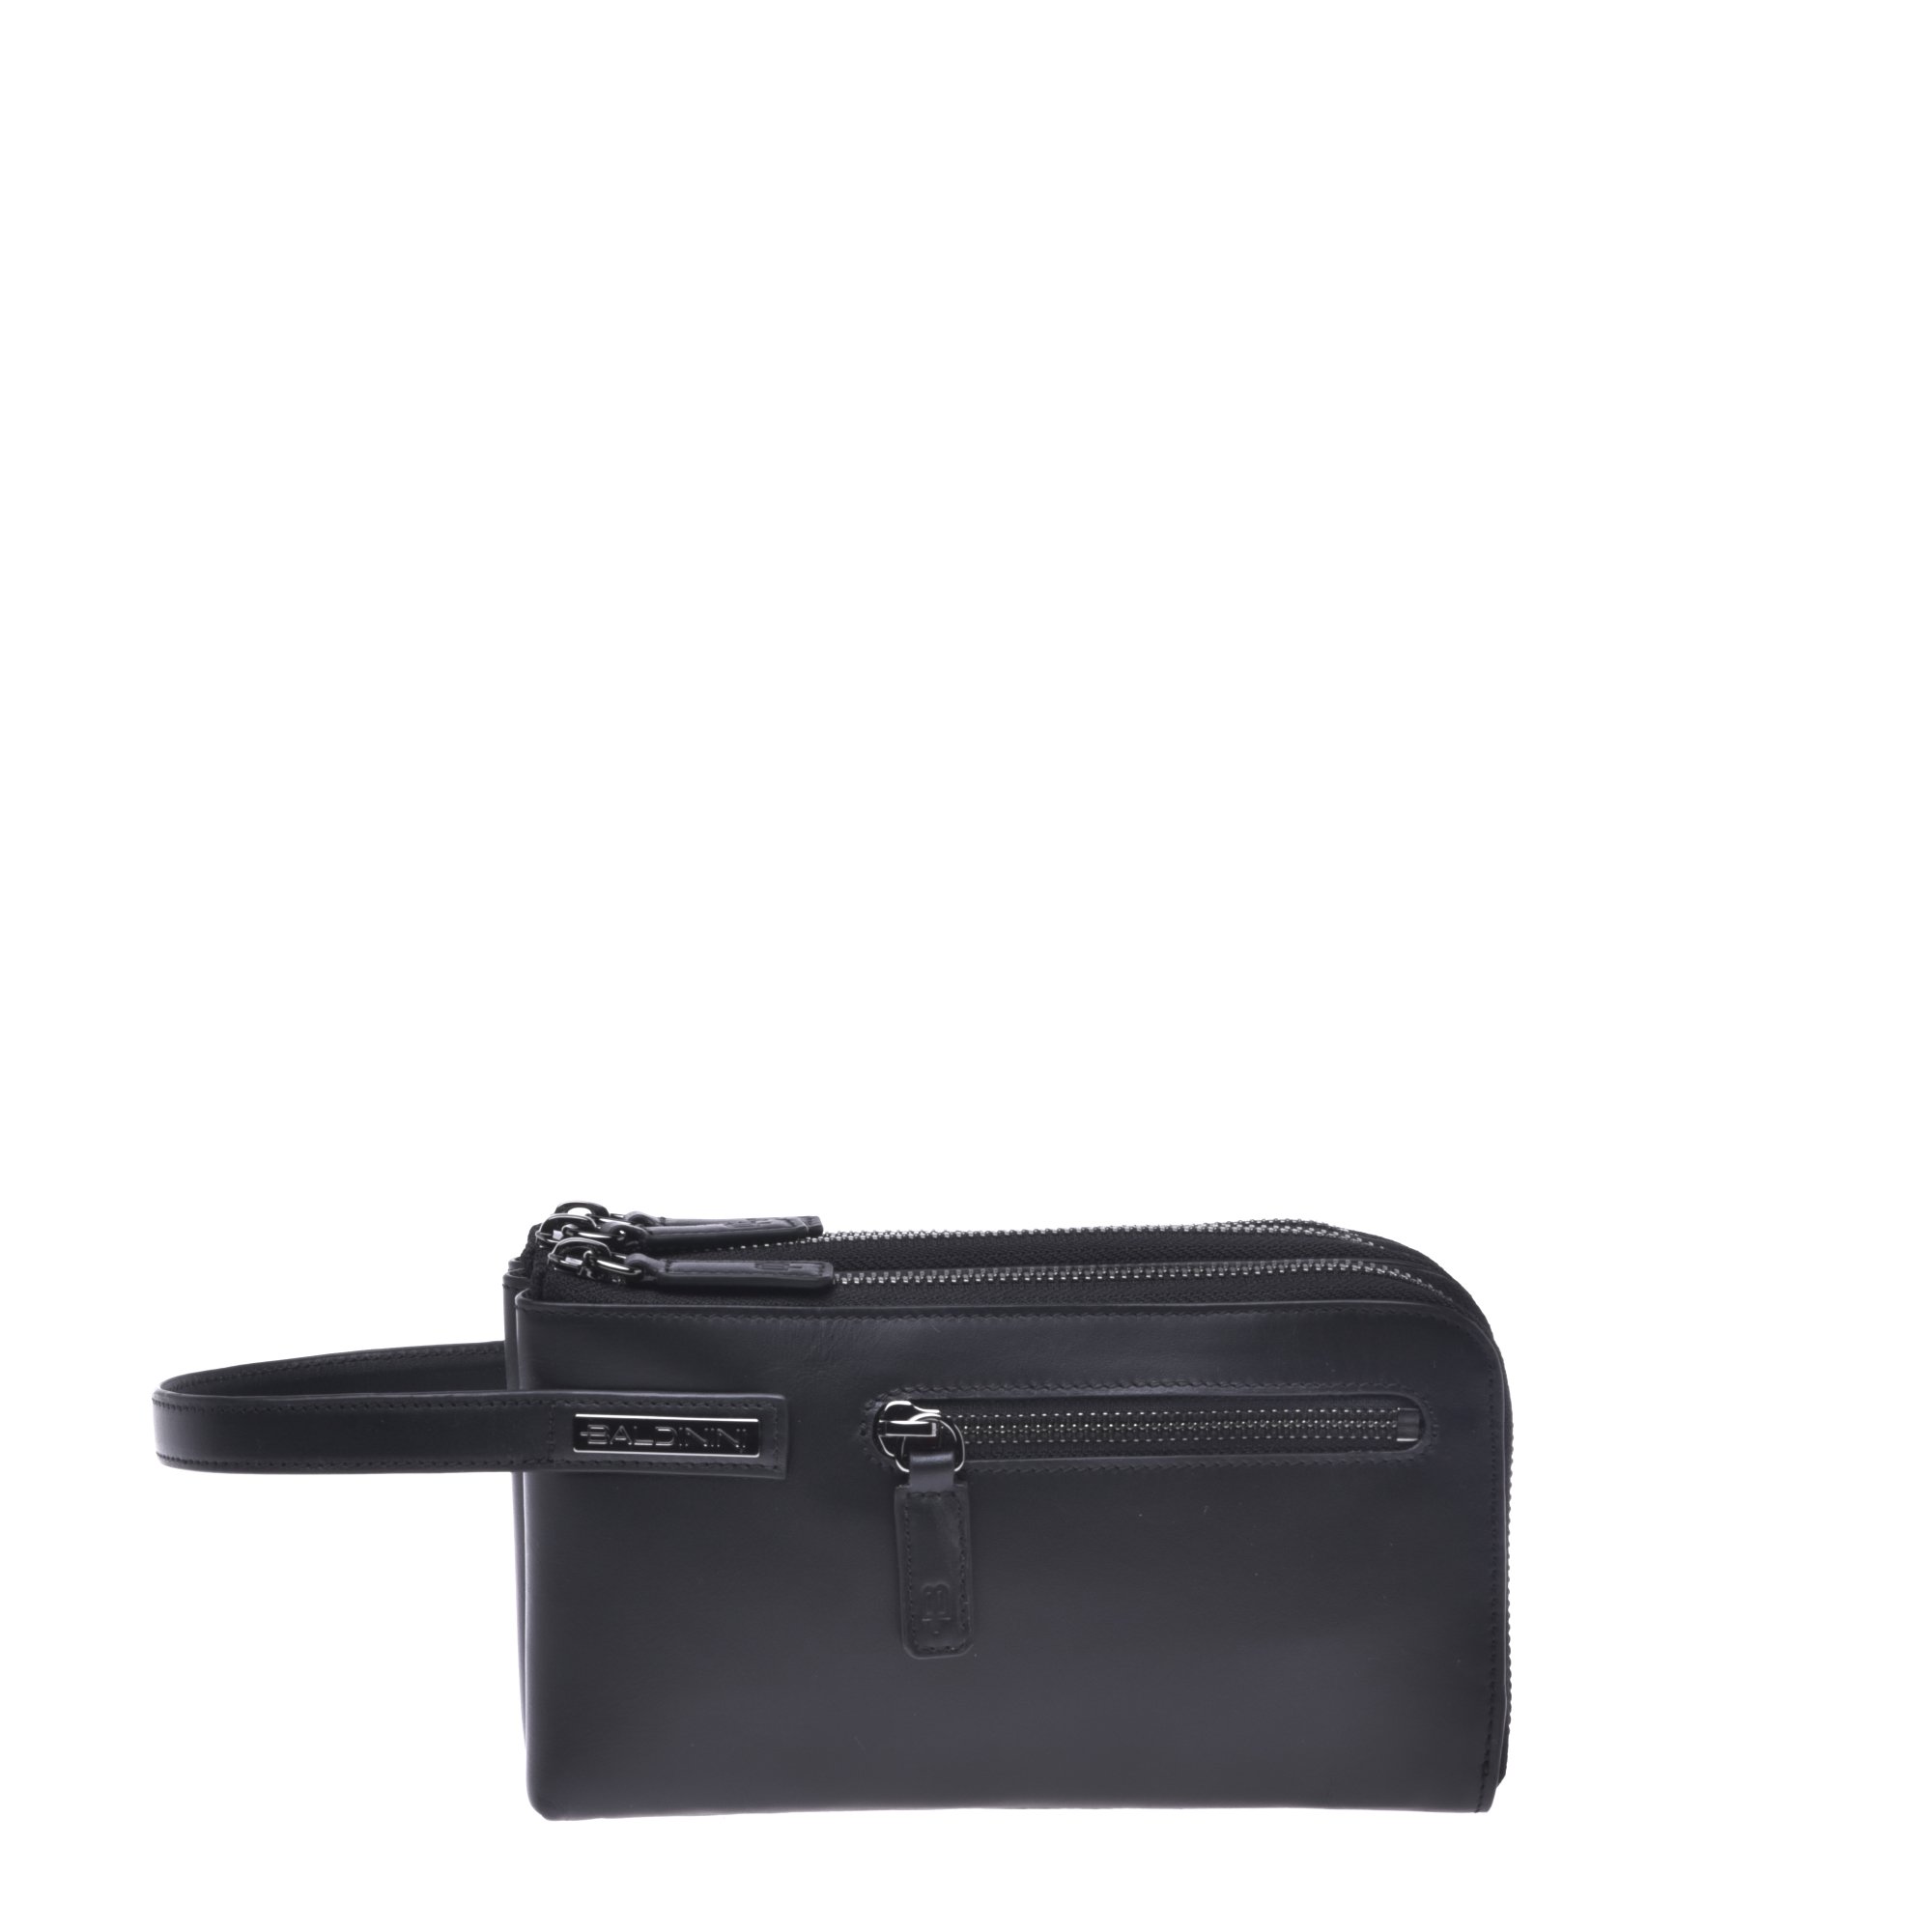 Black calfskin wallet image